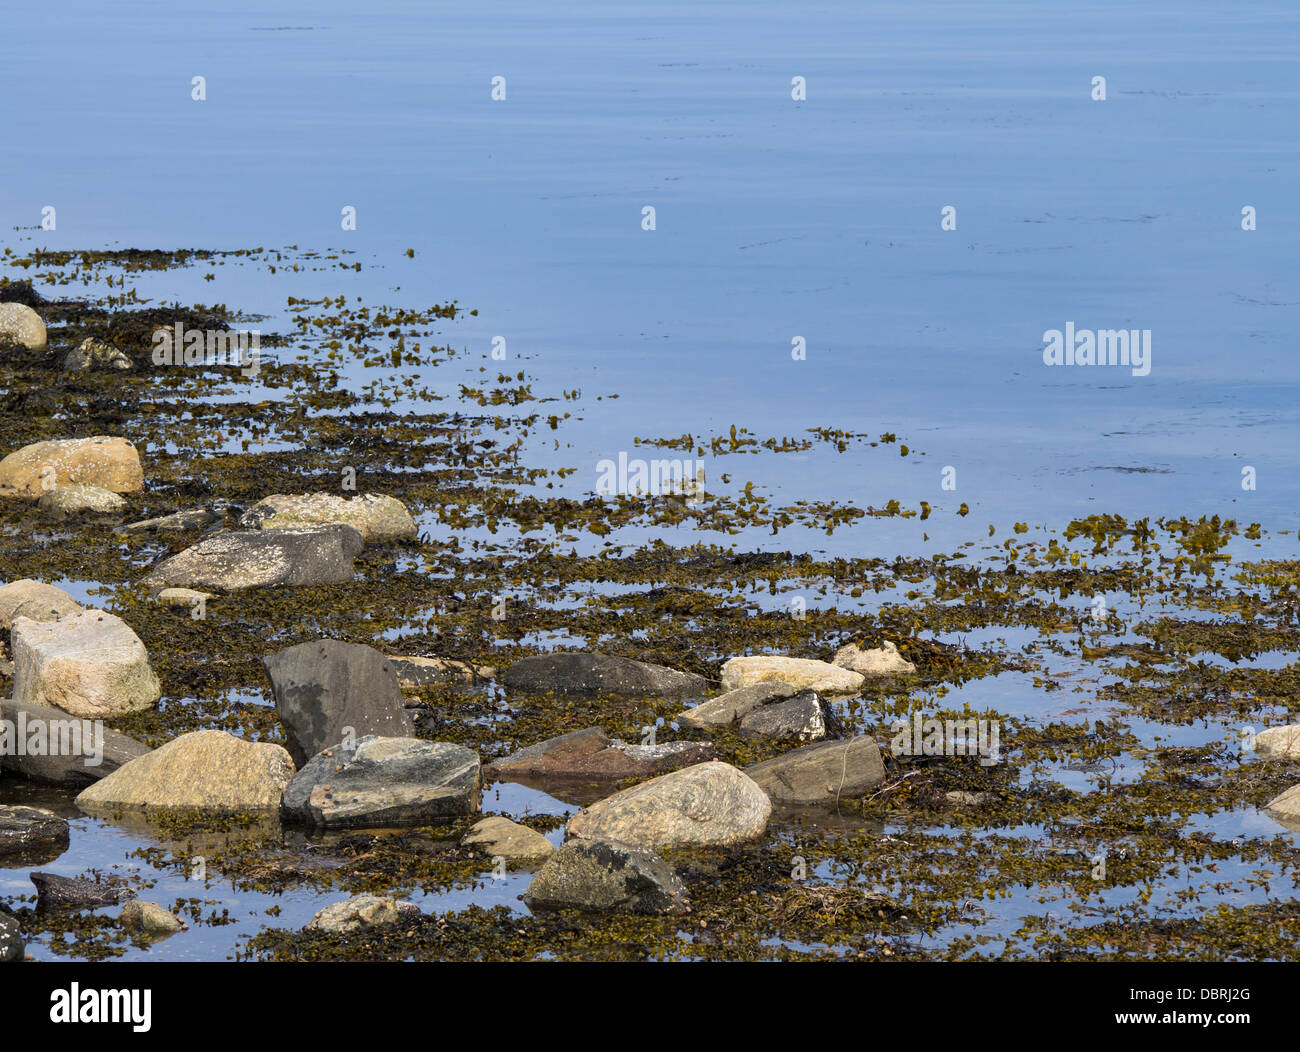 Costa closeup, piedras y algas Fucales litoral un alga marrón y kelp es común a lo largo de las costas de Noruega Foto de stock